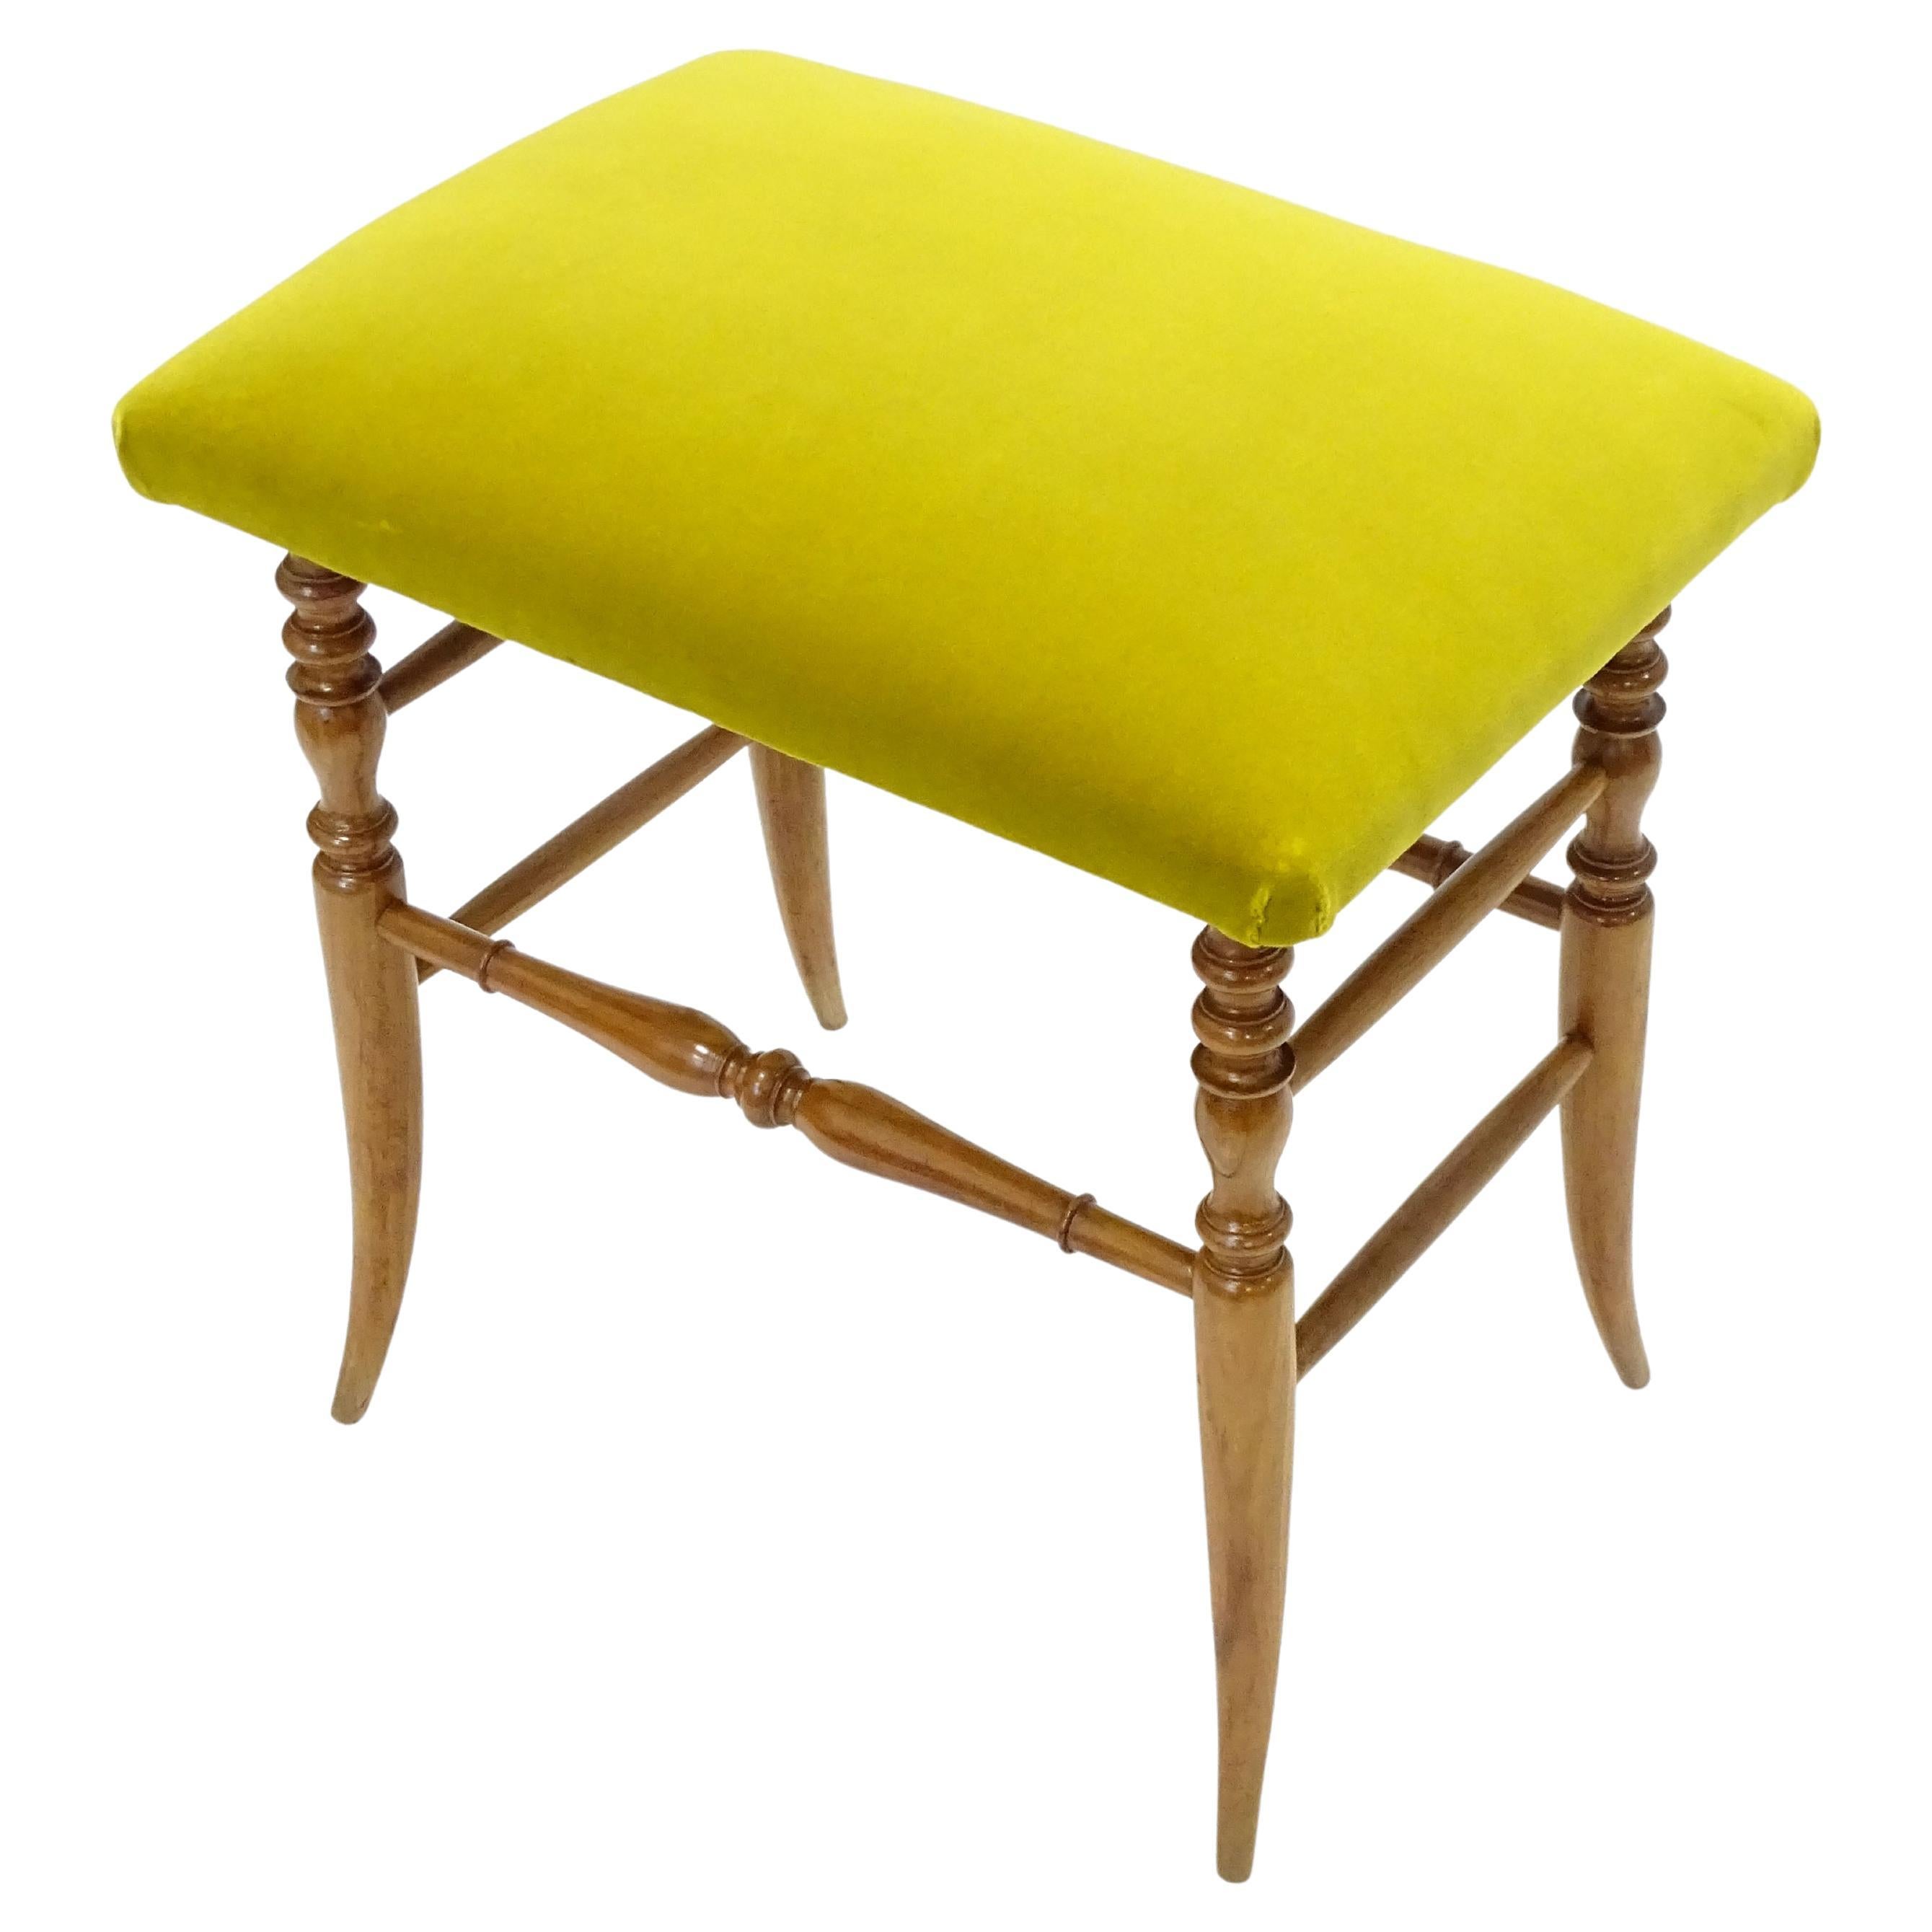 Italian 1950s Chiavarina Wooden Stool with Yellow Velvet Upholstery For Sale